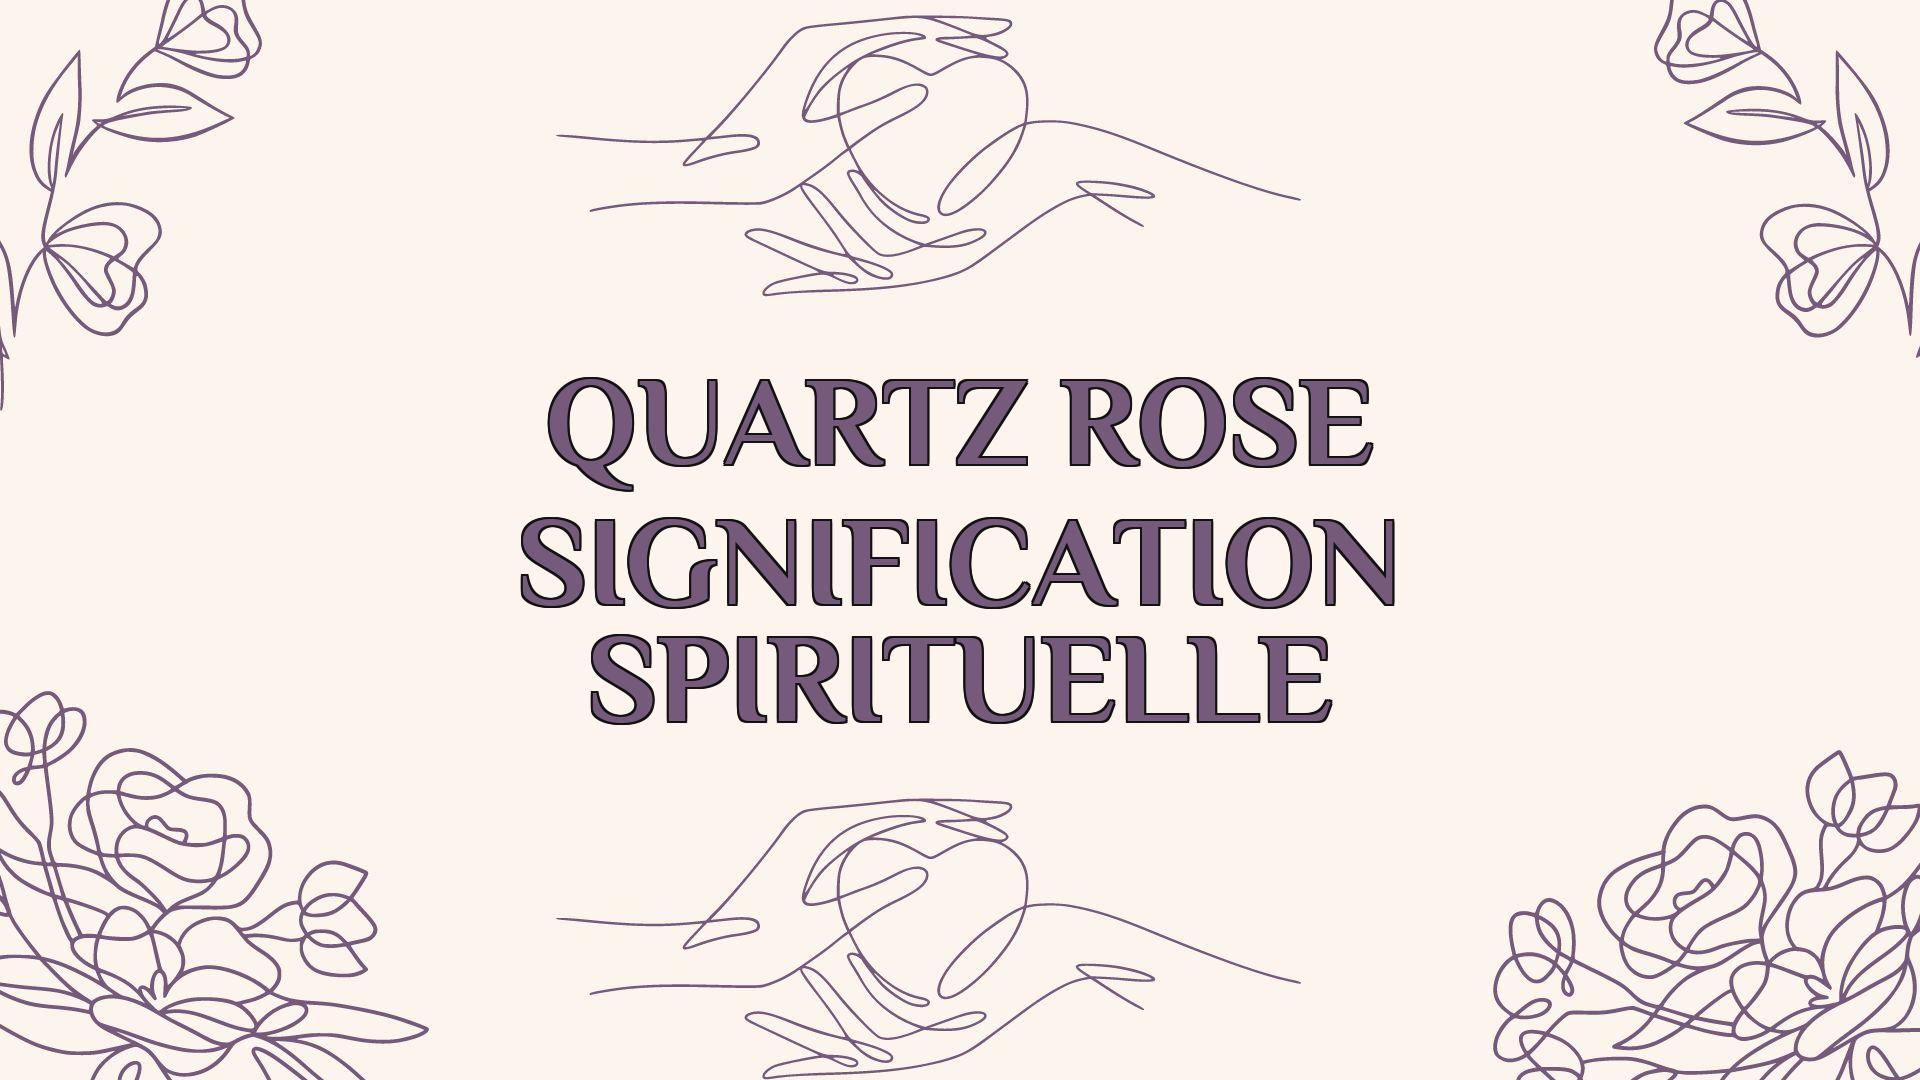 quartz rose signification spirituelle